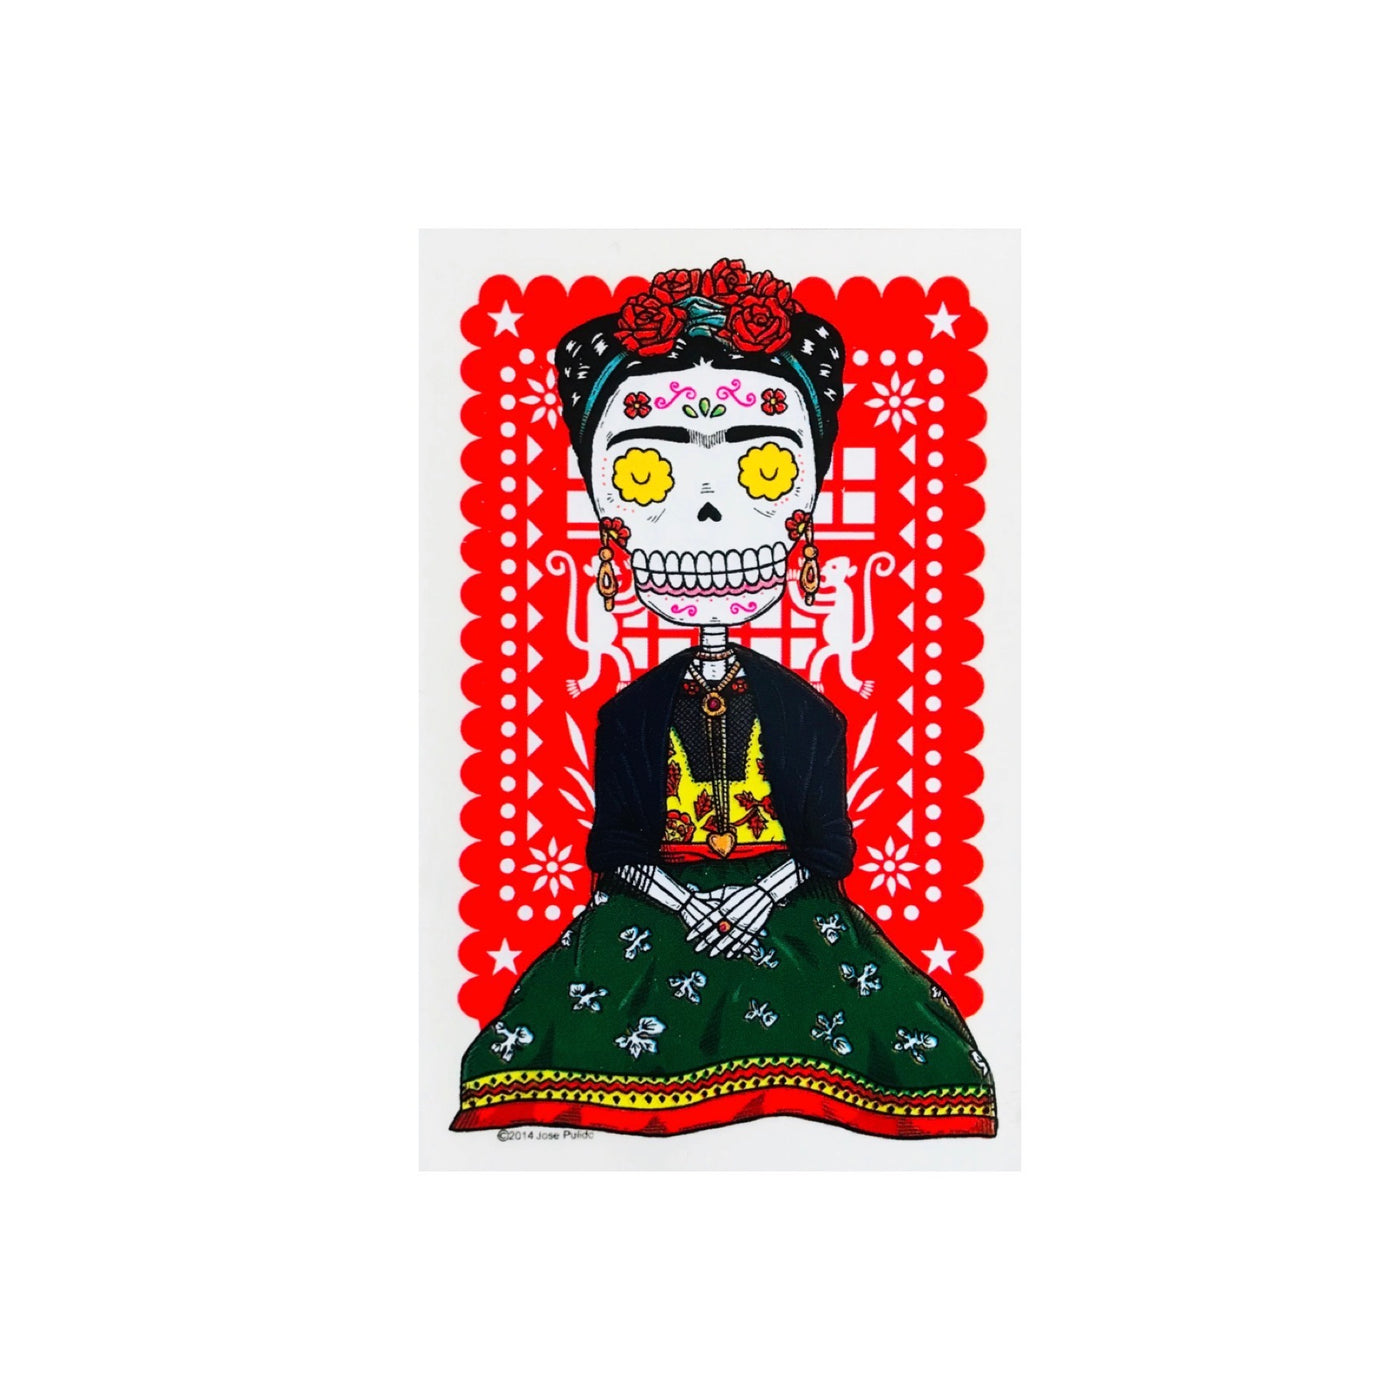 Frida Kahlo calavera with red papel picado sticker.